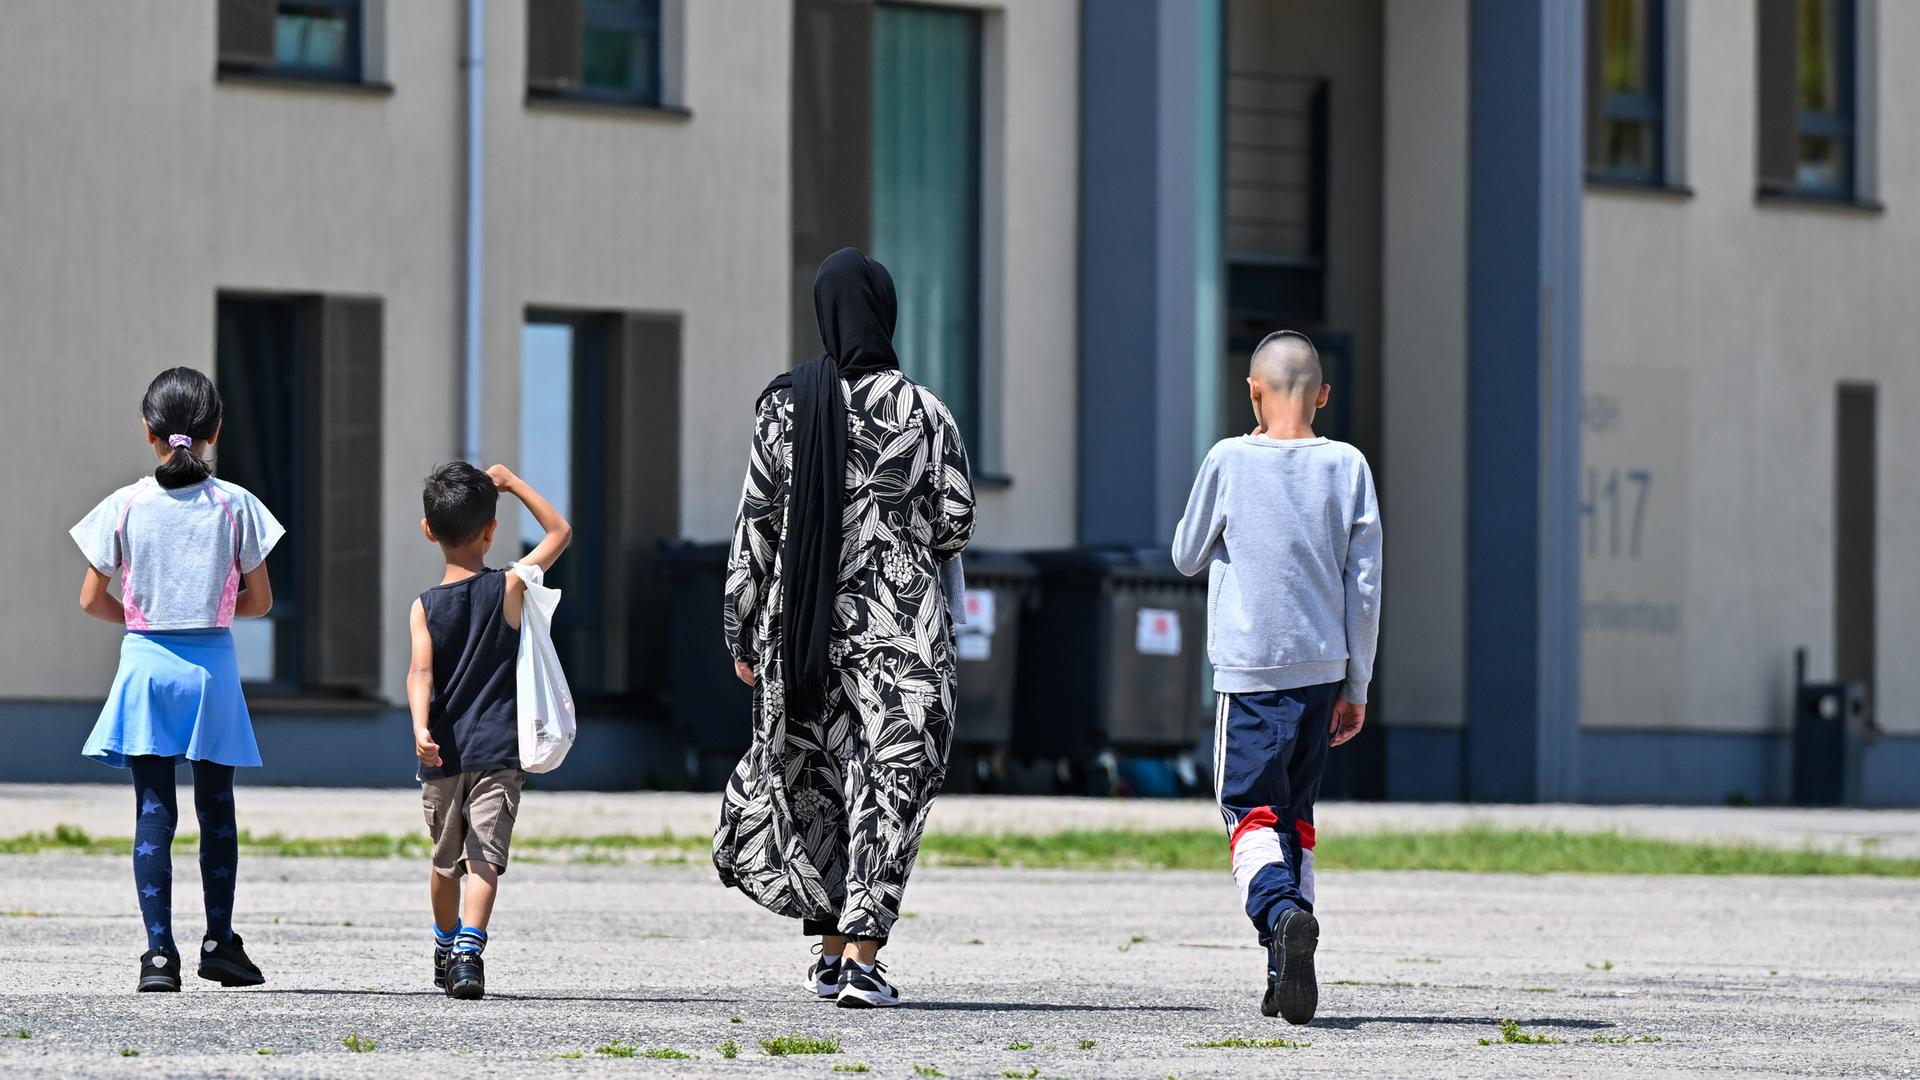 Eine Migrantin und ihre drei Kinder gehen über das Gelände der Erstaufnahmeeinrichtung. Sie sind von hinten zu sehen.